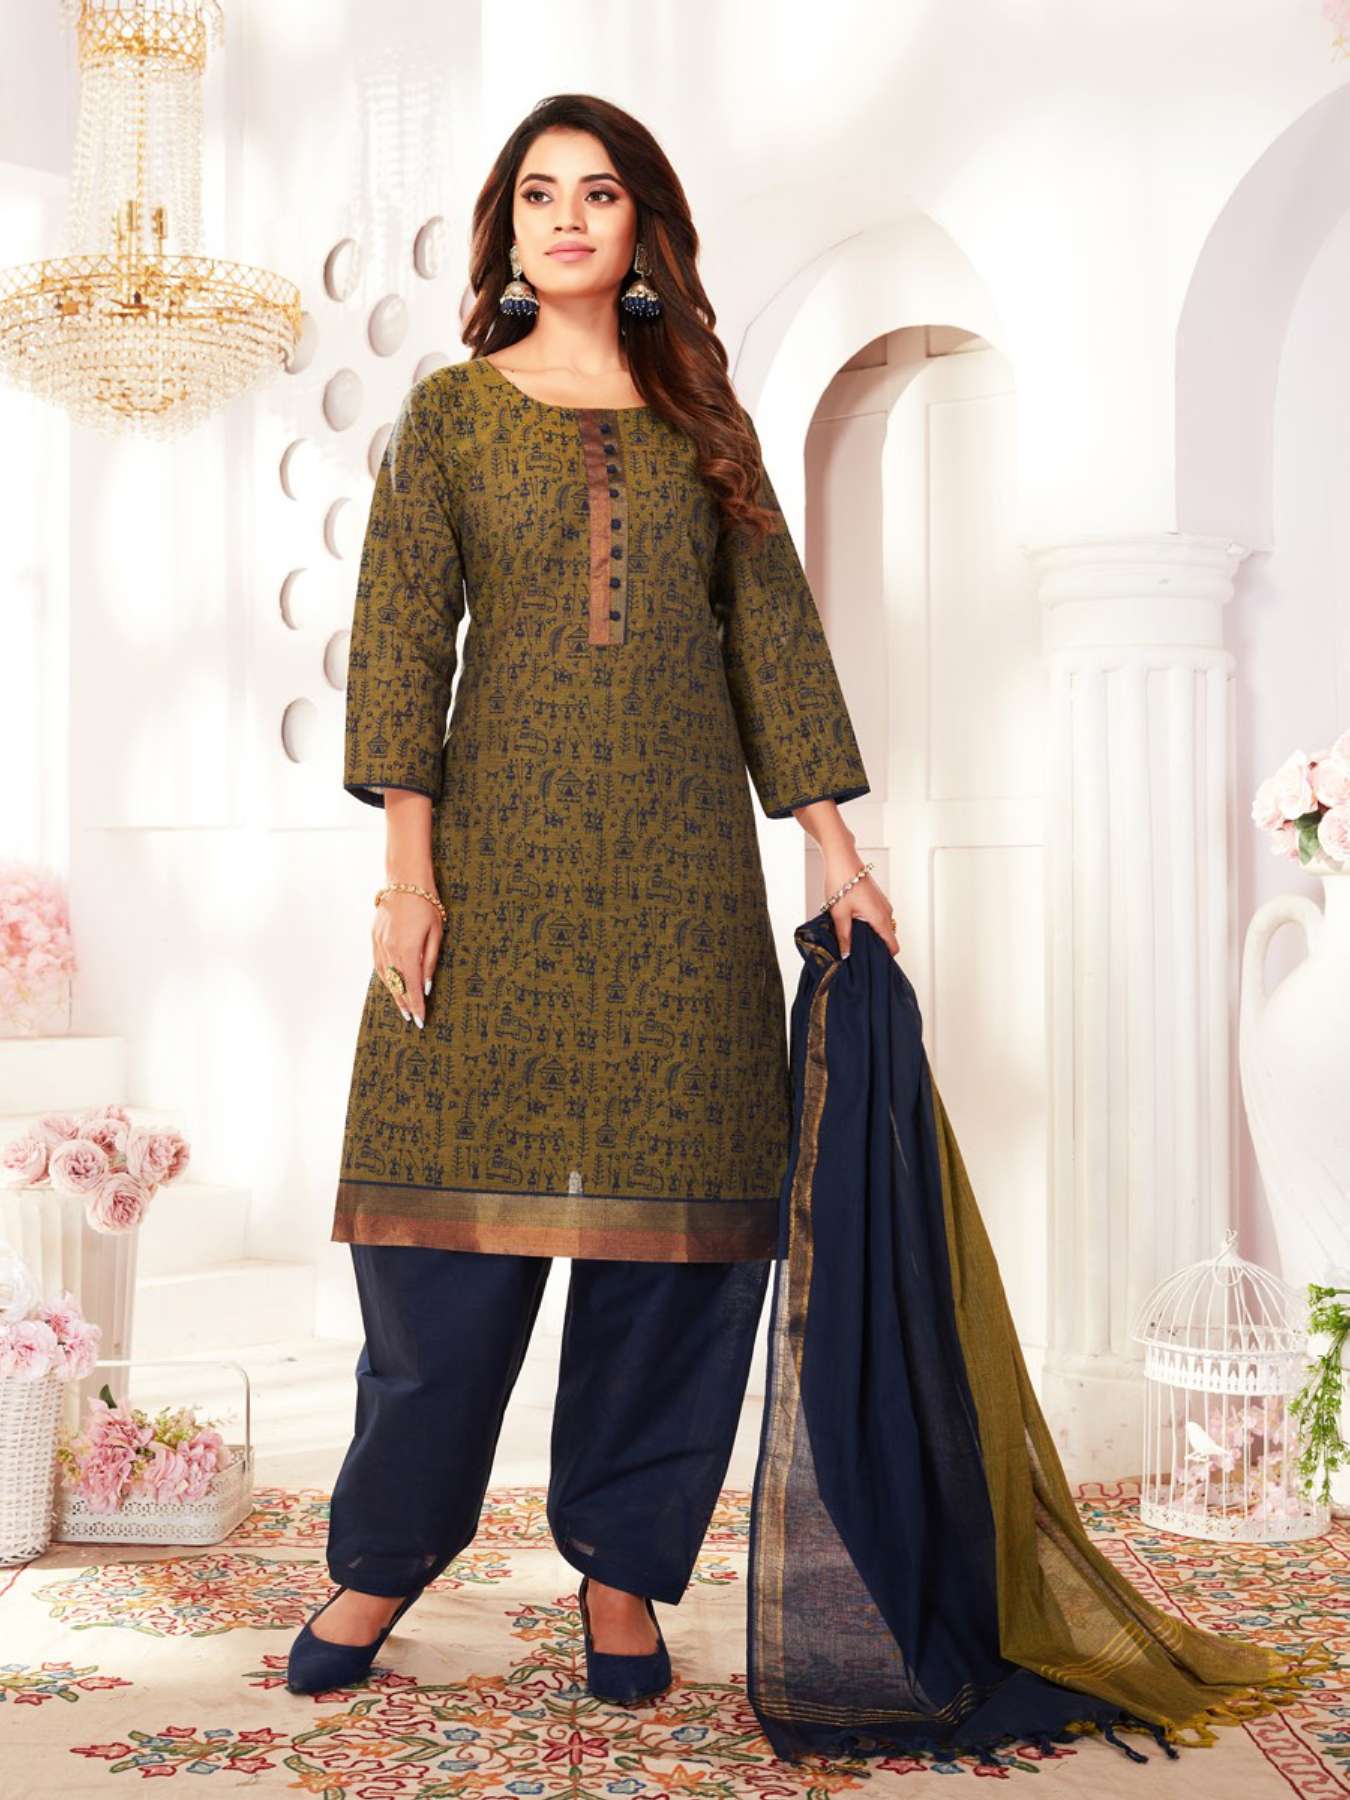 New Punjabi Suit Designs || Punjabi Suit Colour Combination Ideas ||  Punjabi Suits Party Wear #suit - YouTube